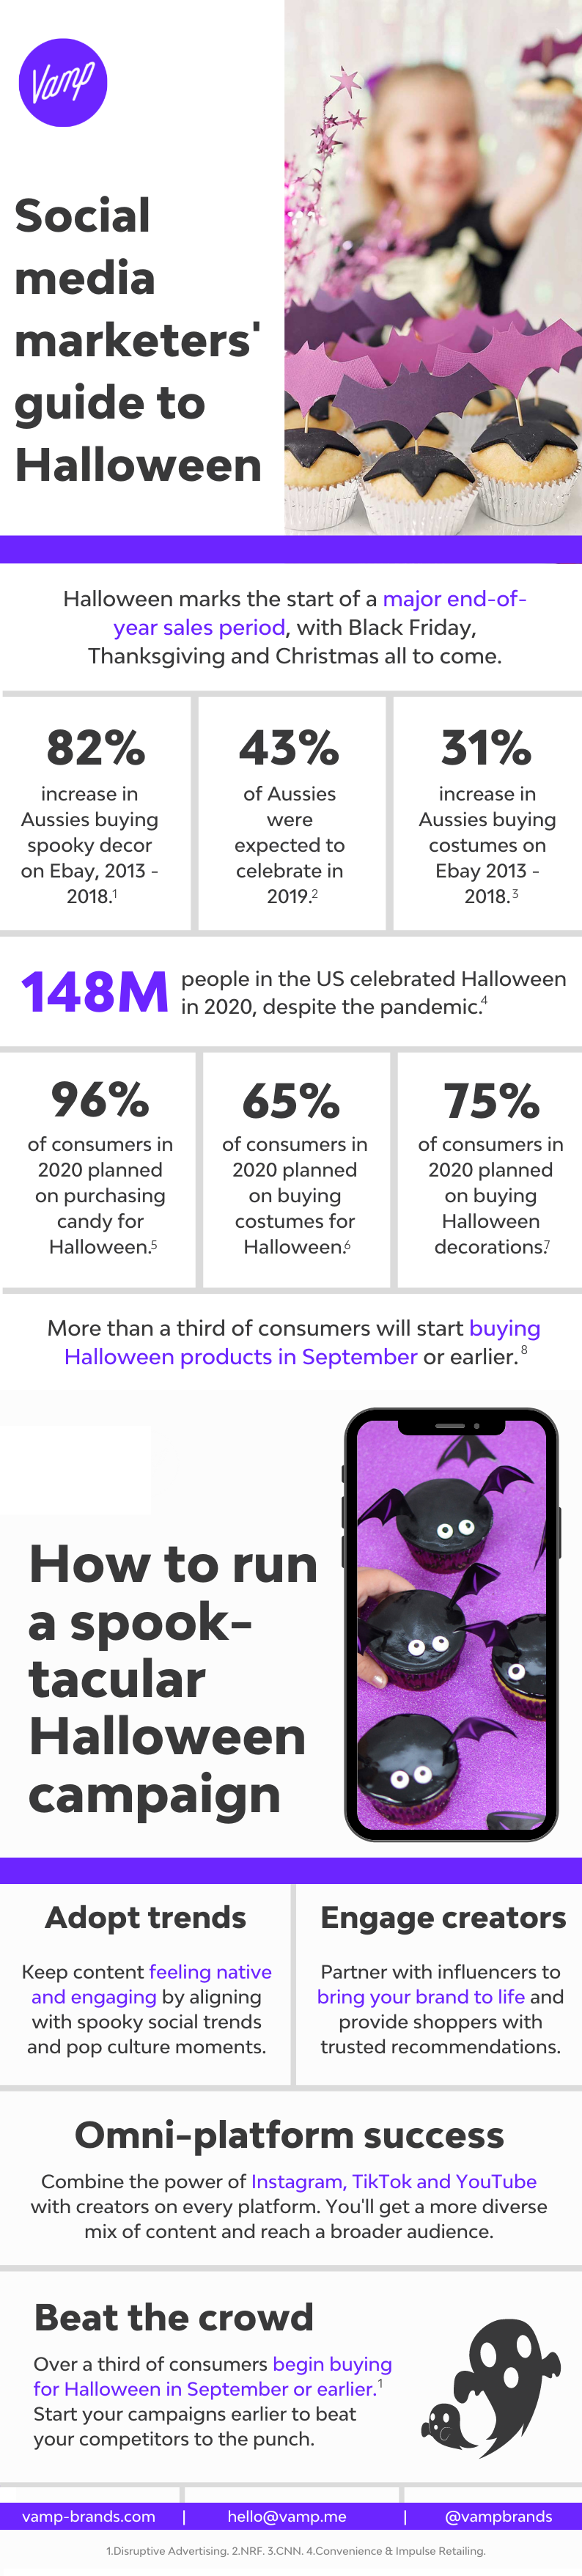 Infographie sur les statistiques et les conseils d'Halloween